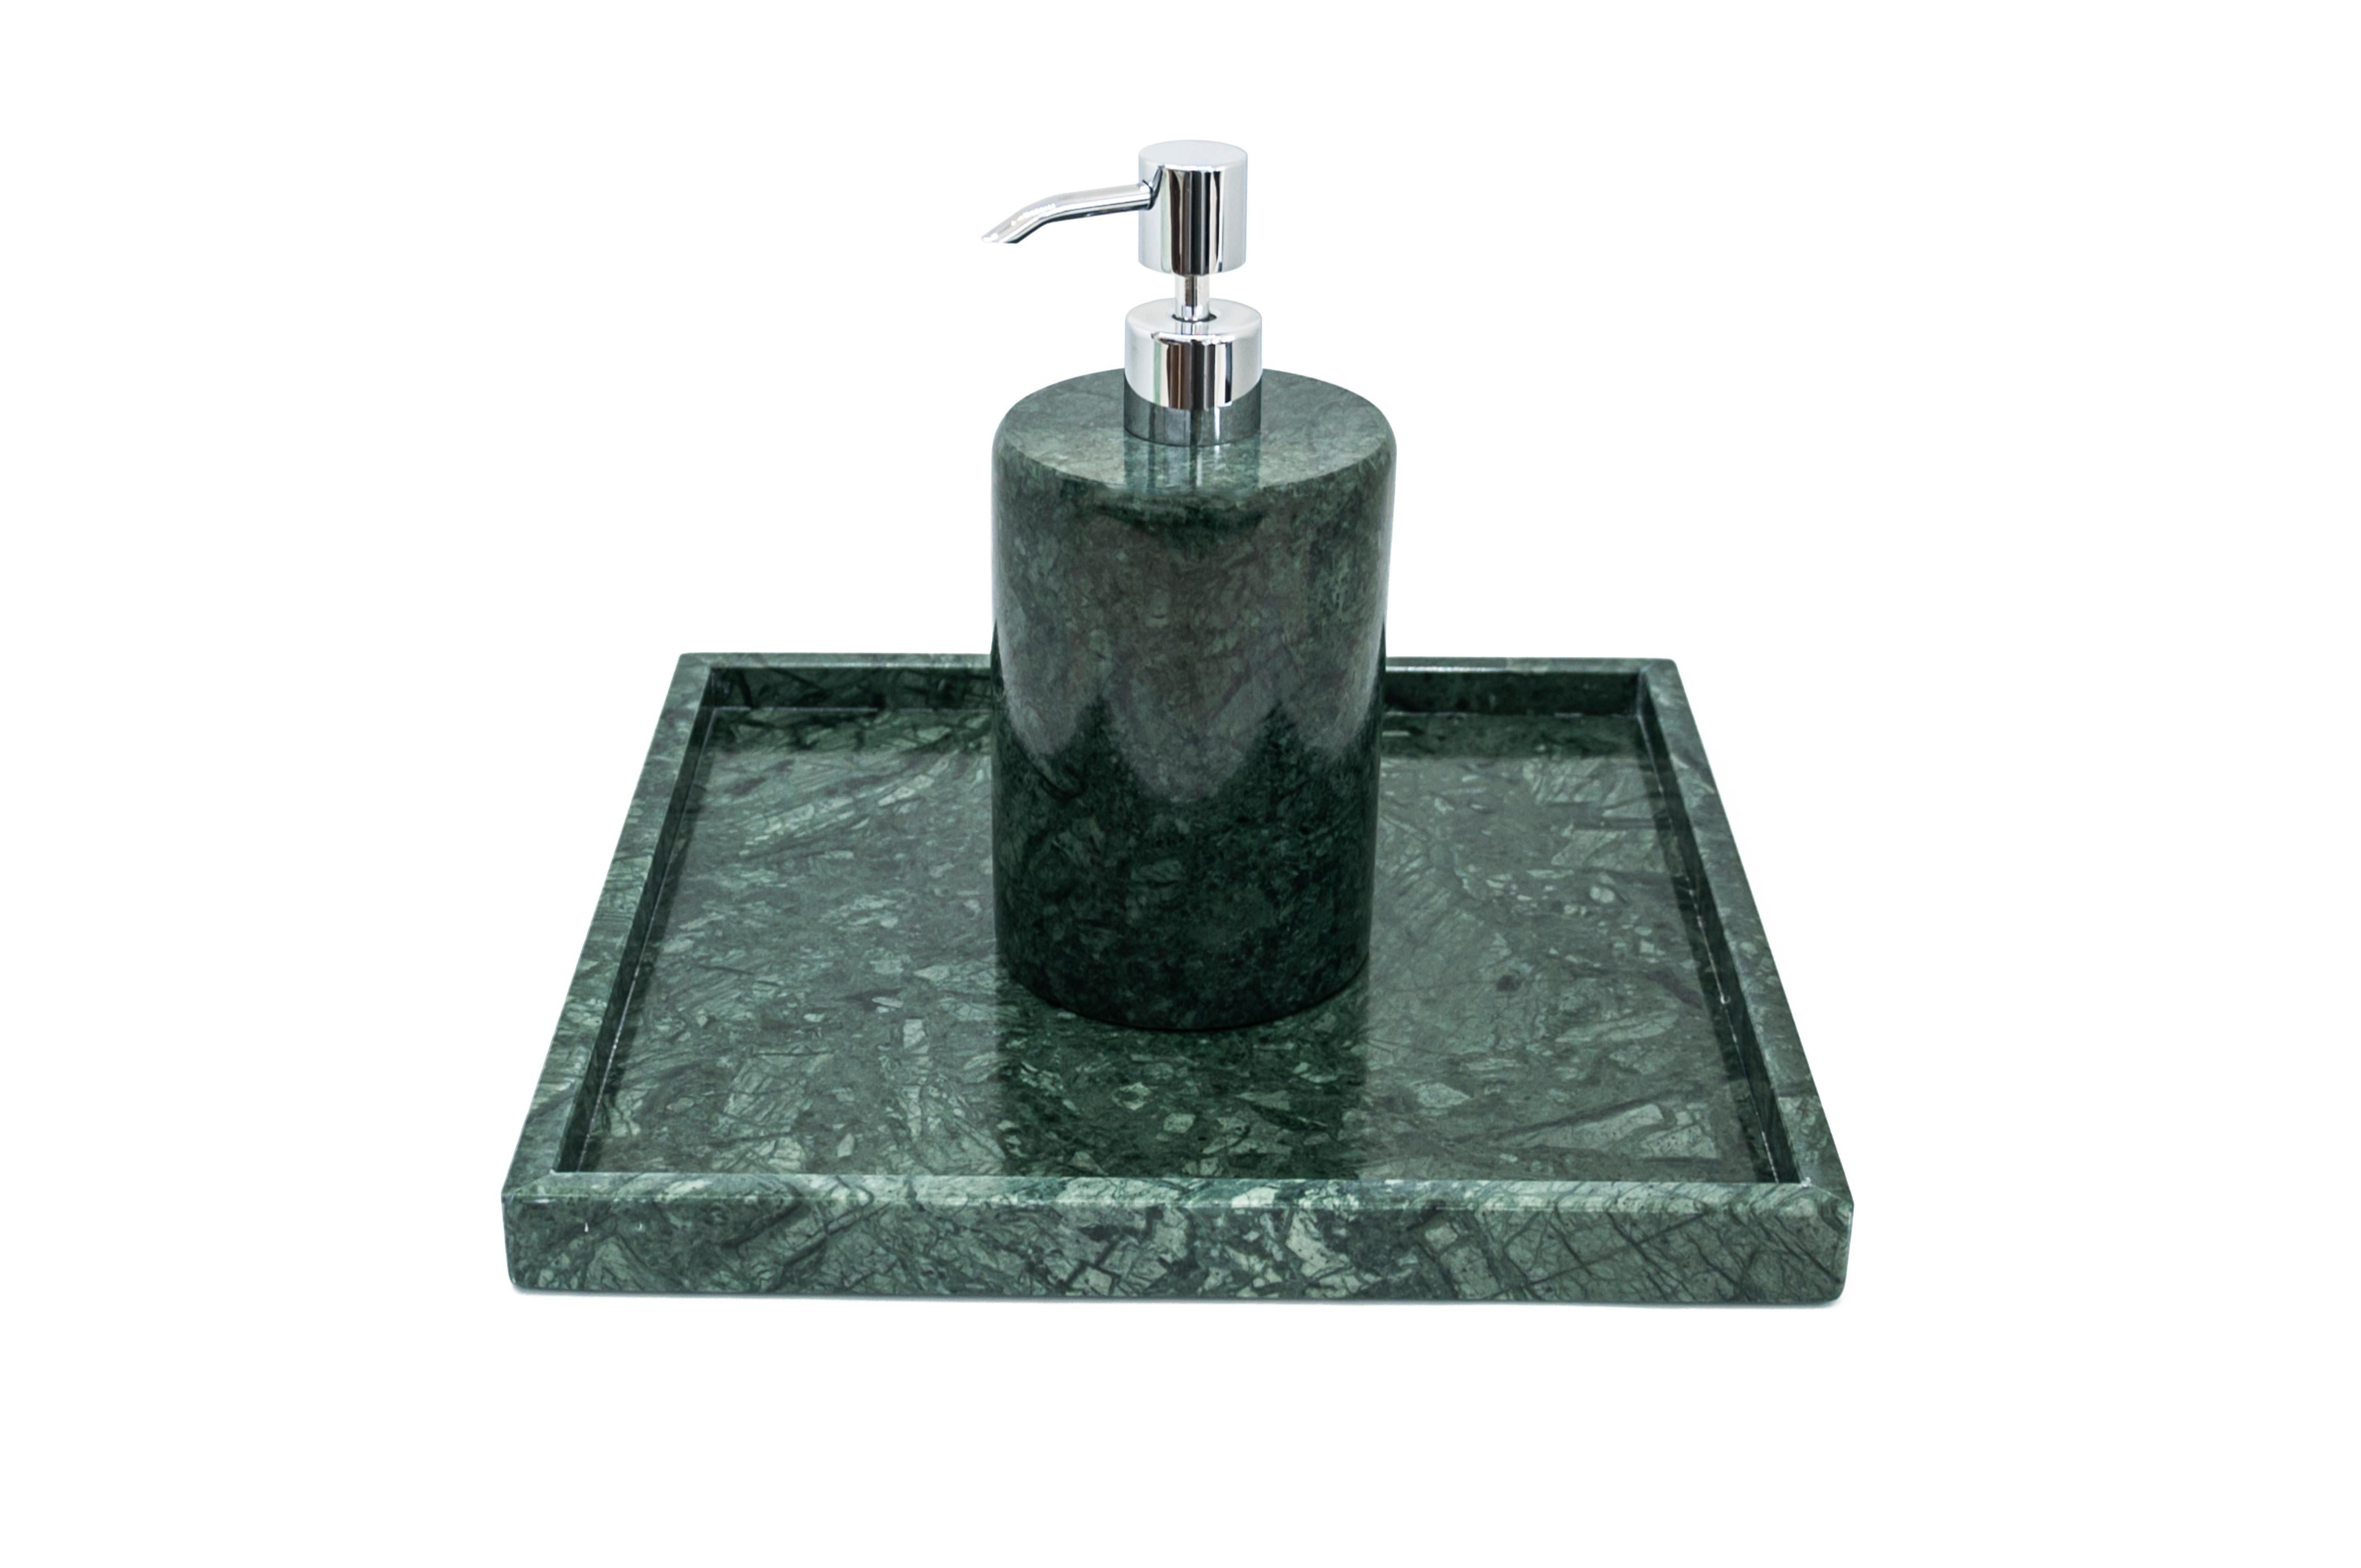 Un distributeur de savon de forme arrondie en marbre vert du Guatemala.
Chaque pièce est en quelque sorte unique (puisque chaque bloc de marbre est différent par ses veines et ses nuances) et fabriquée à la main en Italie. Les légères variations de